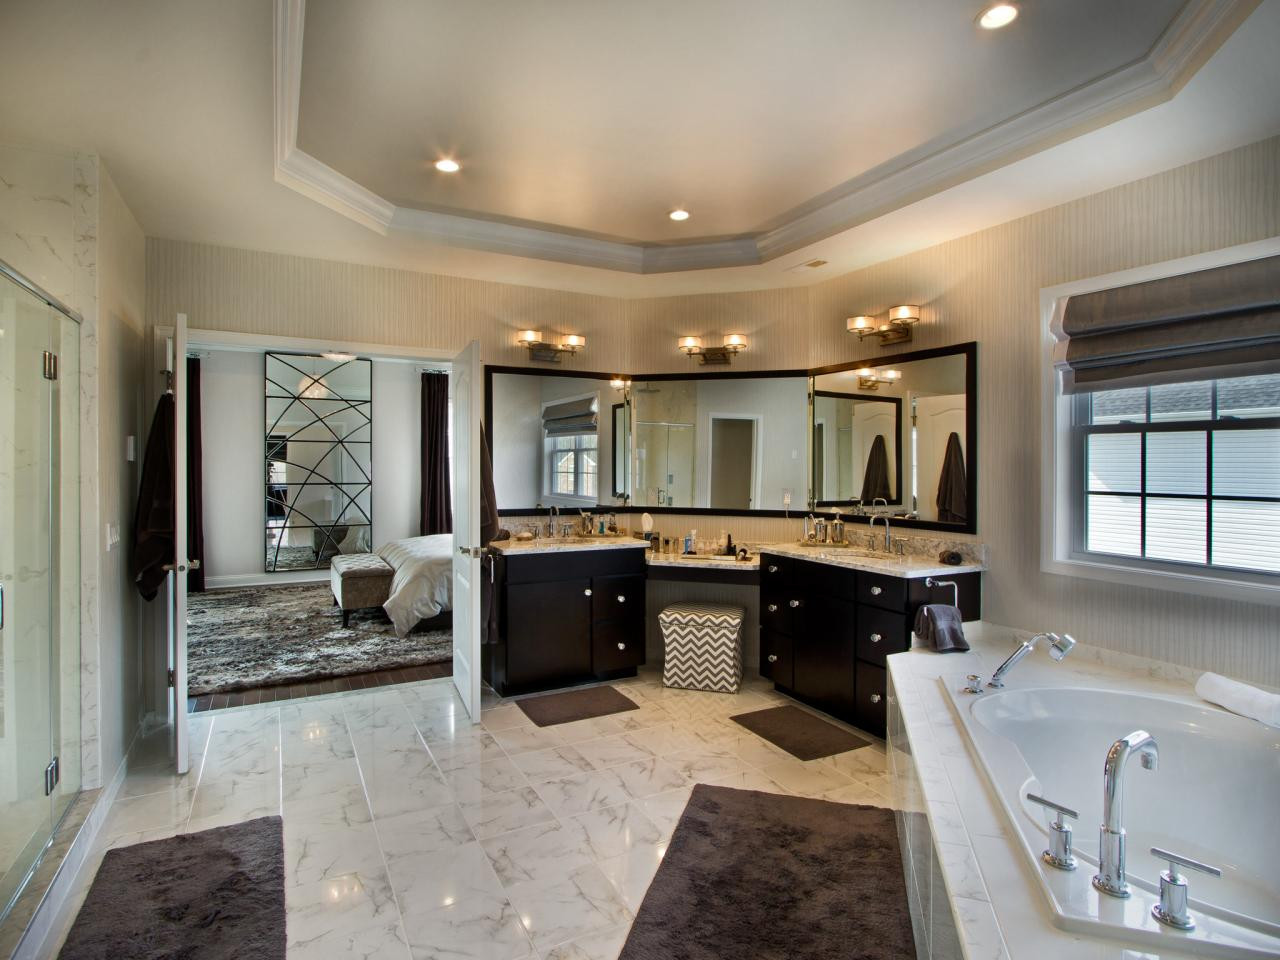 Remodeling Master Bathroom Ideas
 25 Extraordinary Master Bathroom Designs